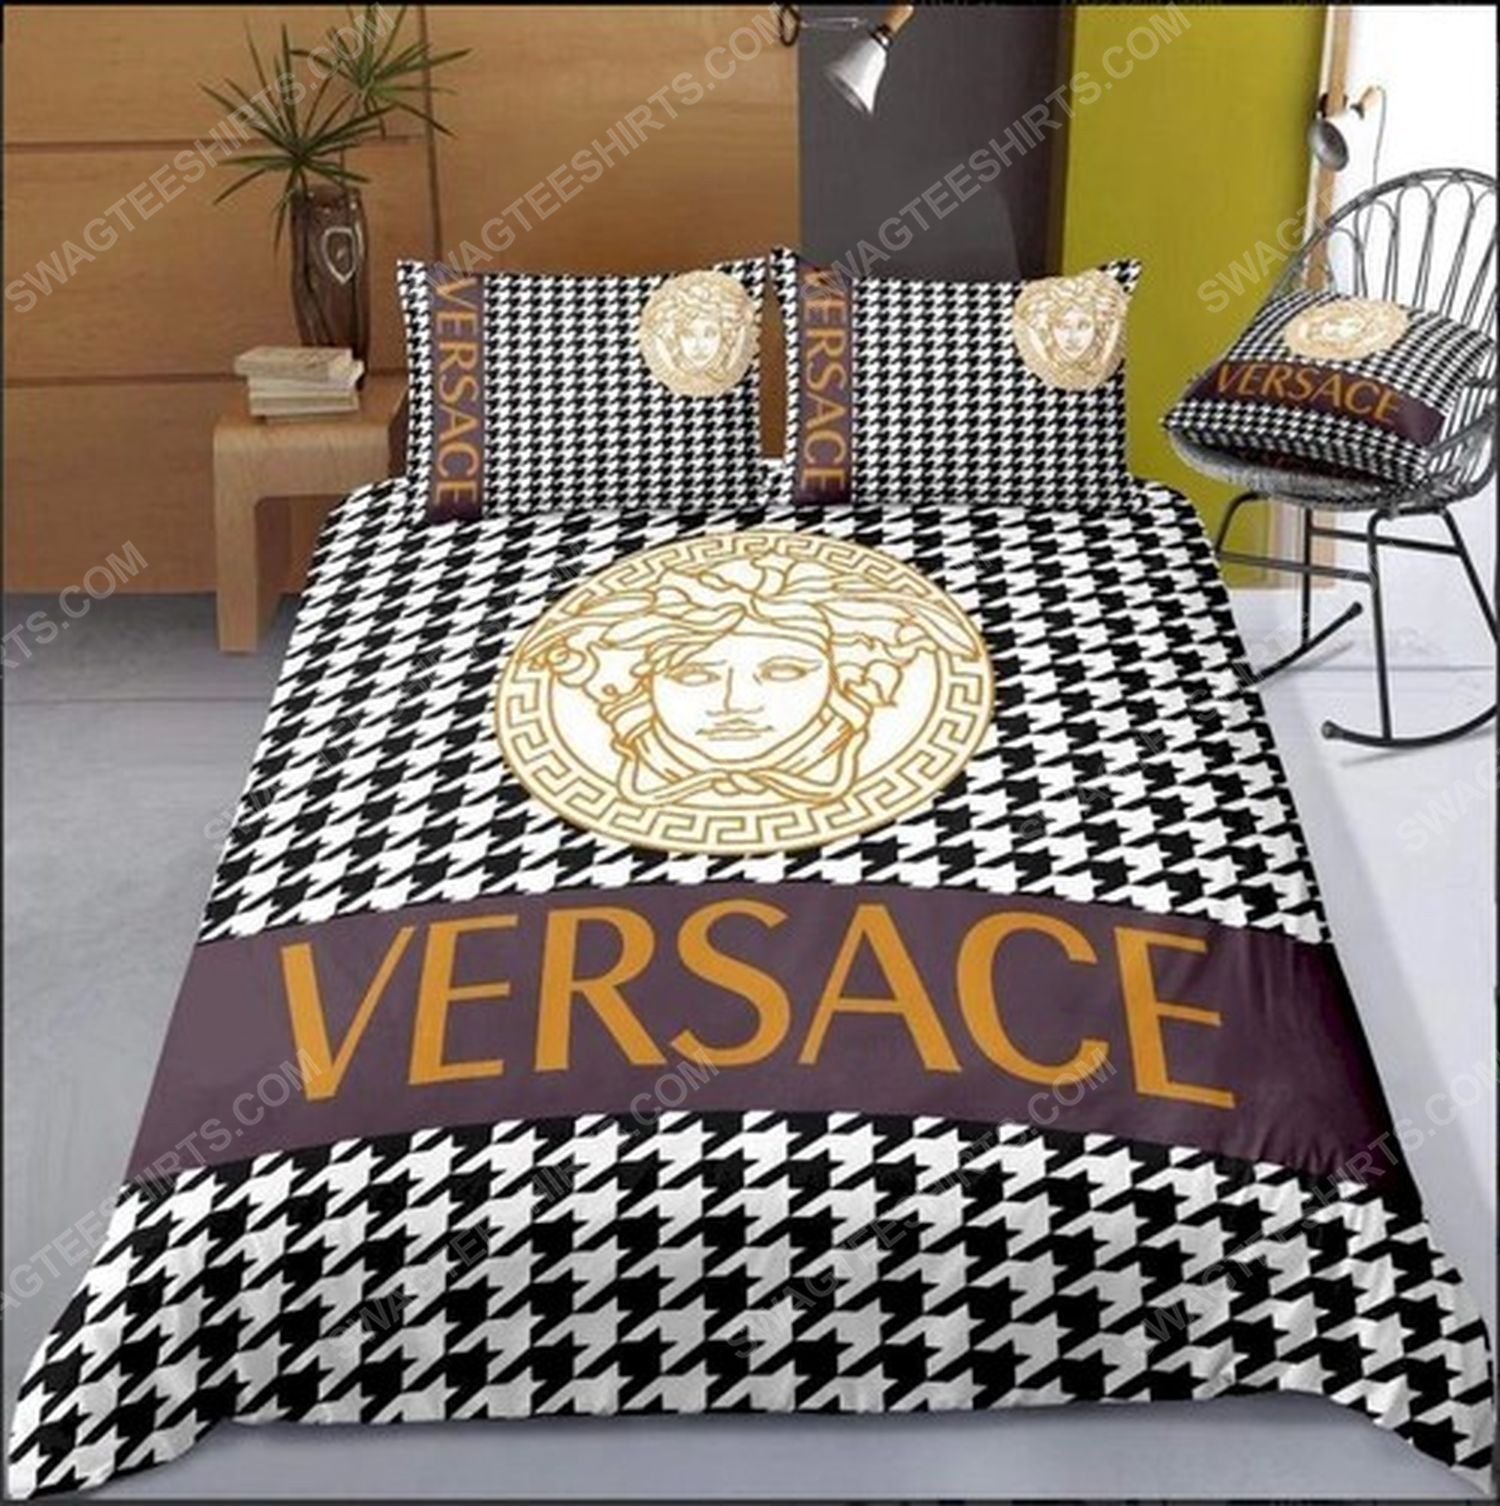 Versace home monogram full print duvet cover bedding set 1